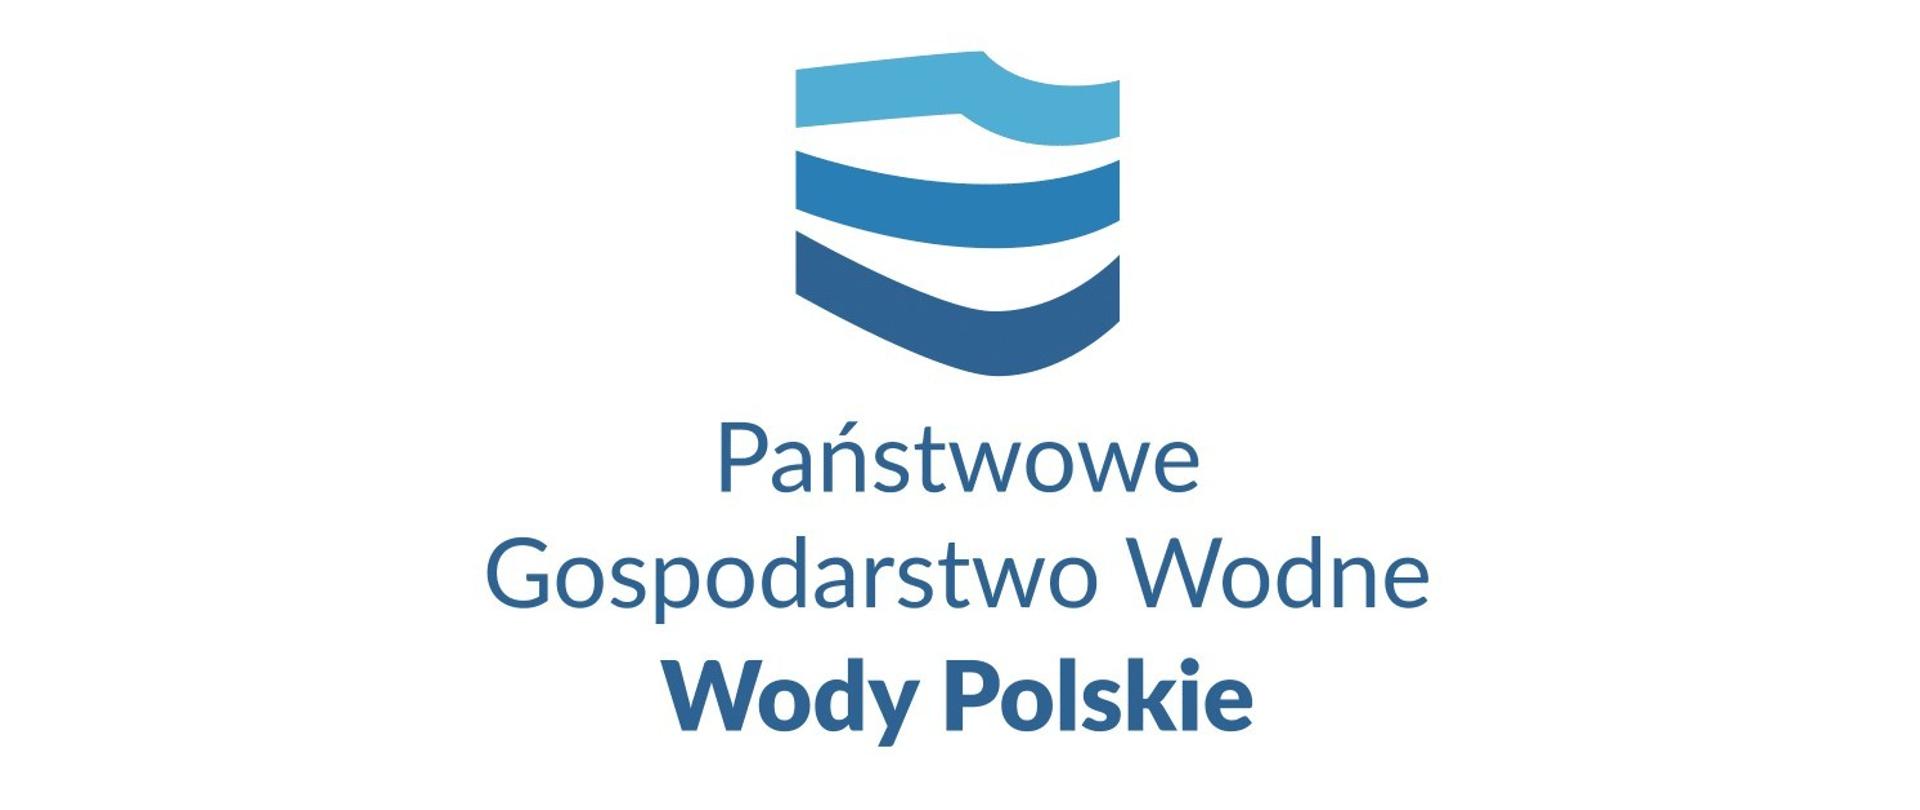 Logo - Wody Polskie. W dużym formacie. W kształcie poziomego prostokąta. Na białym tle, centralnie, znajduje się logotyp składający się z trzech fal w trzech odcieniach niebieskiego, które kształtem przypominają kontury Polski. Pod nim widać niebieski napis - Państwowe Gospodarstwo Wodne Wody Polskie. 